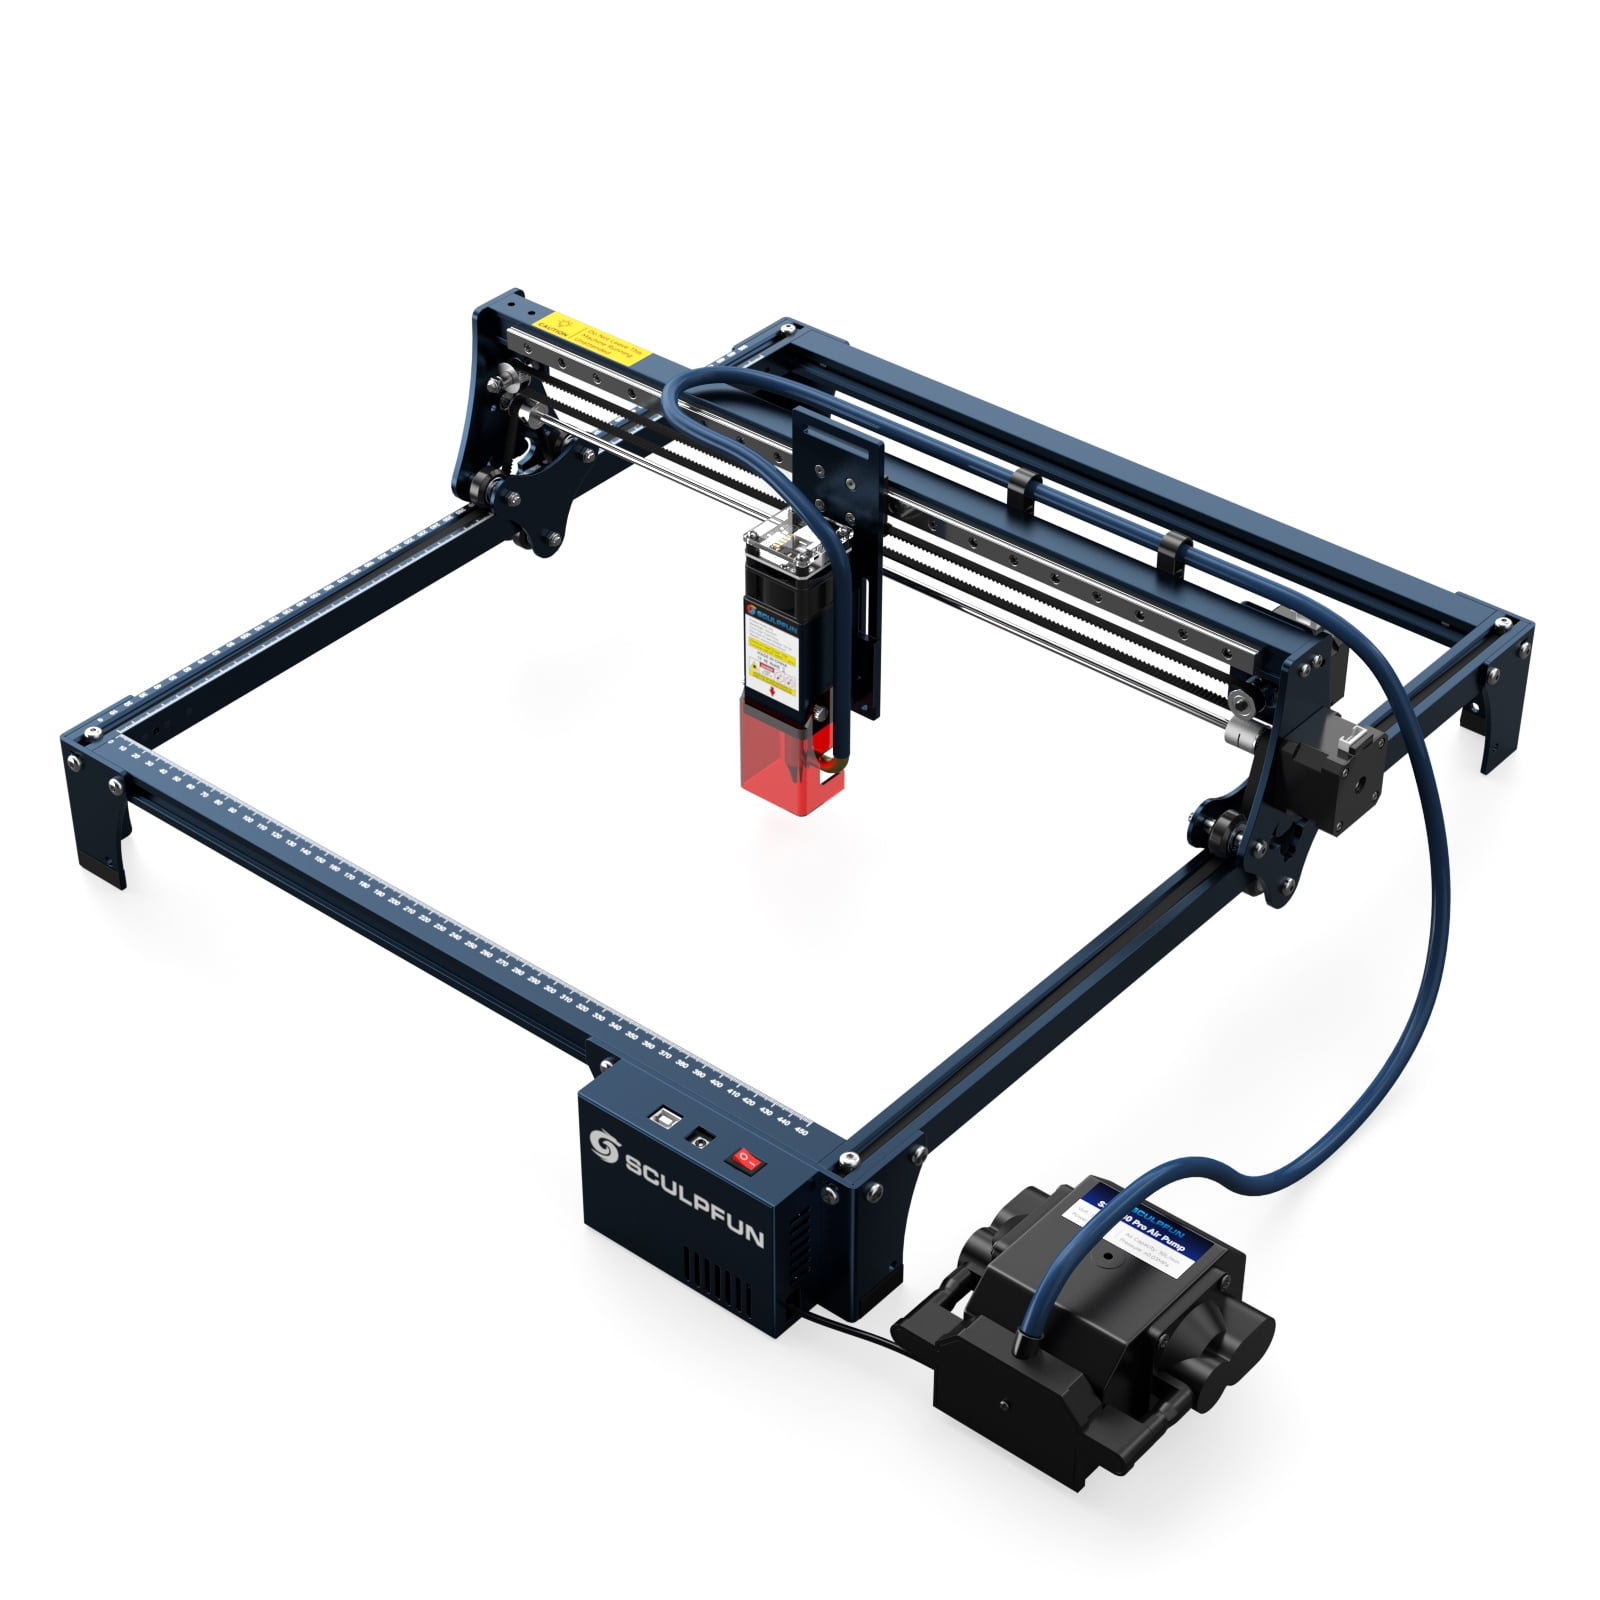 Sculpfun S9 5.5W Laser Engraving Machine